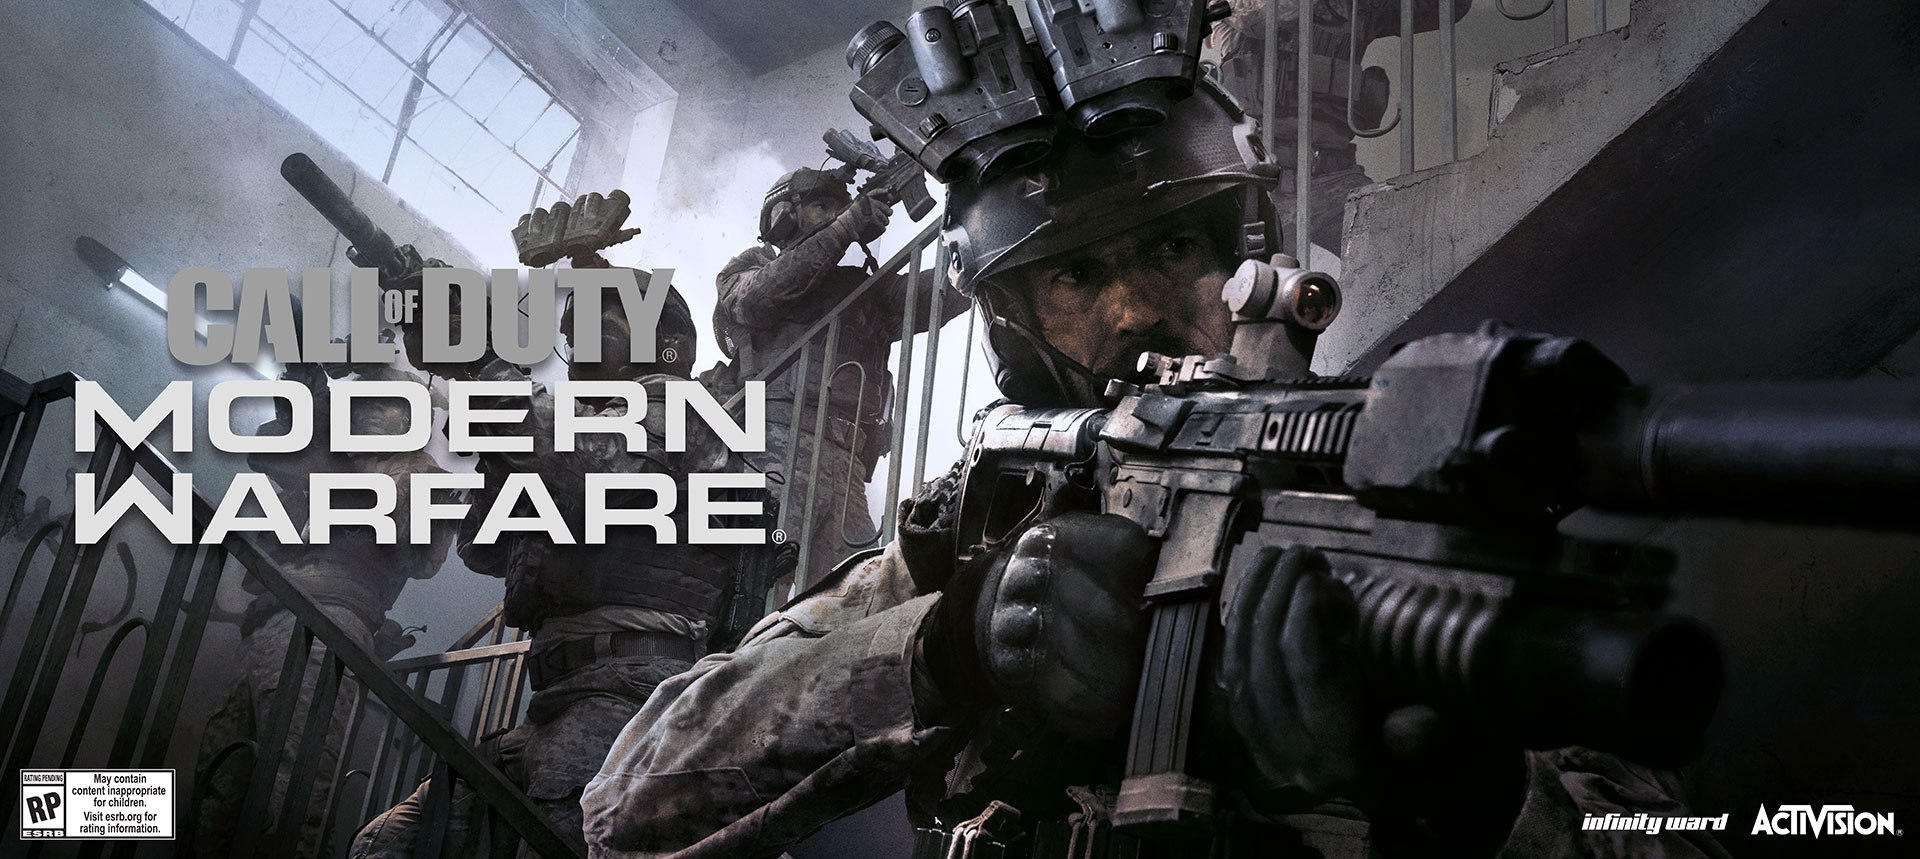 Будет ли бета-версия для Modern Warfare?